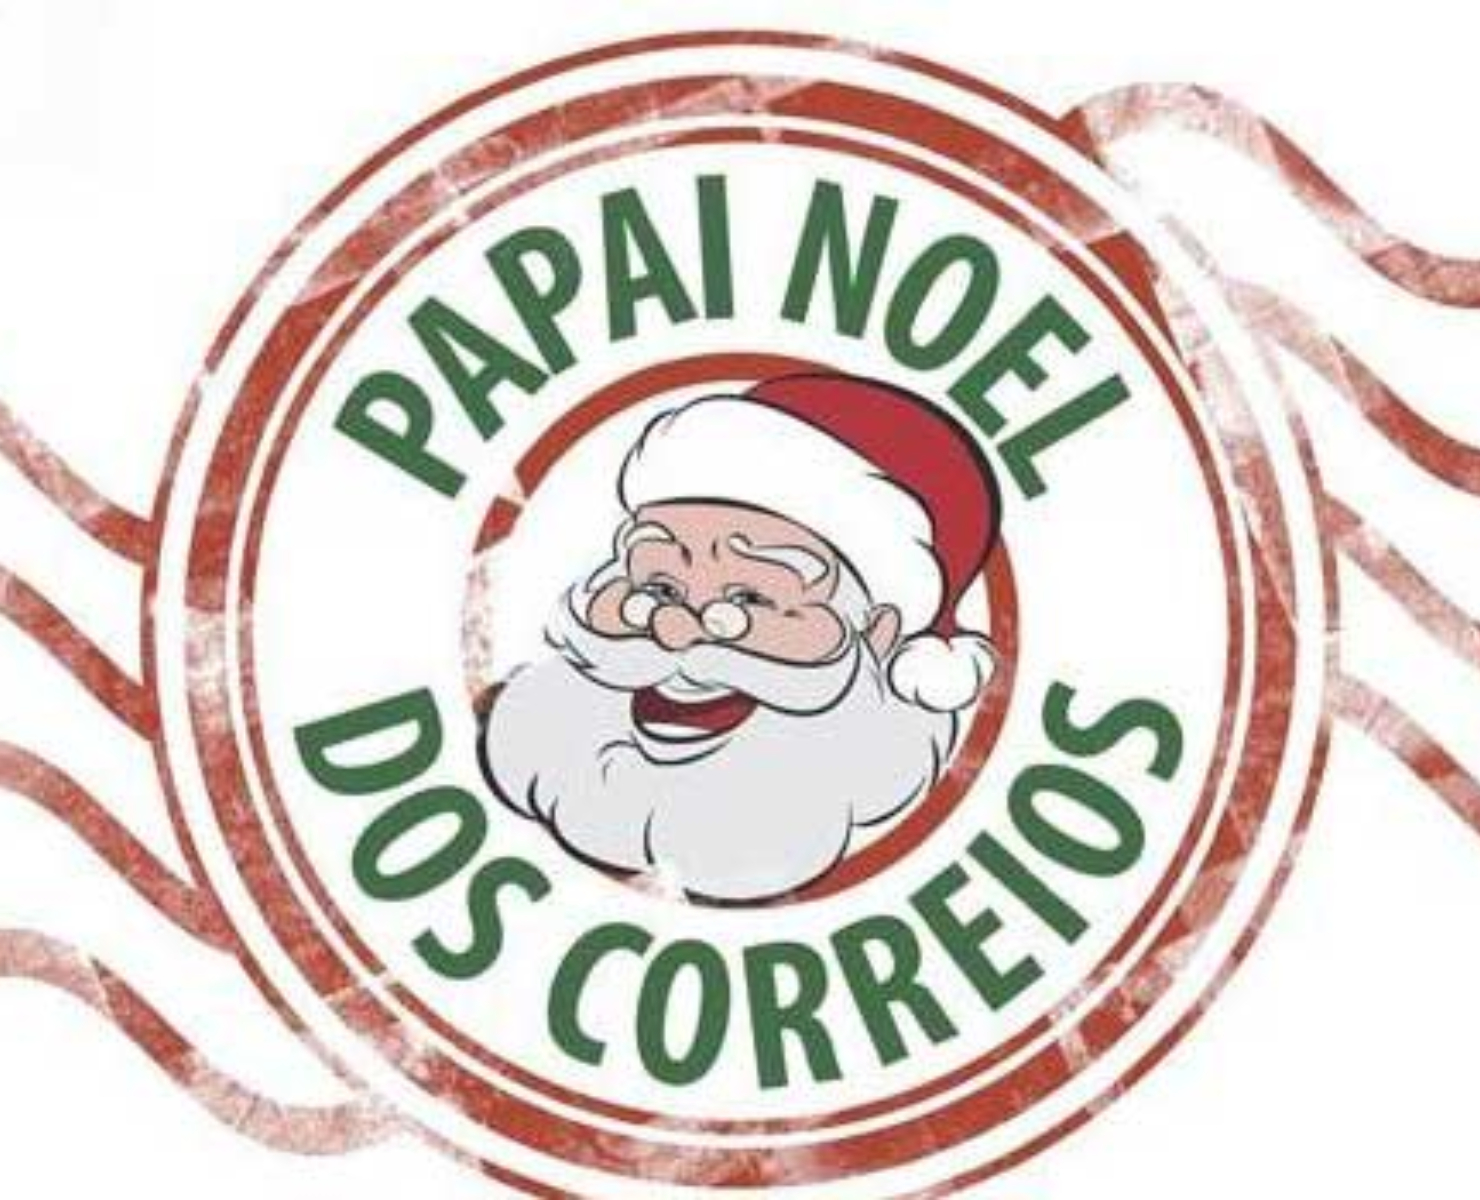 CORREIOS: CAMPANHA CARTINHAS DO PAPAI NOEL ACABA NESTA SEXTA, 13